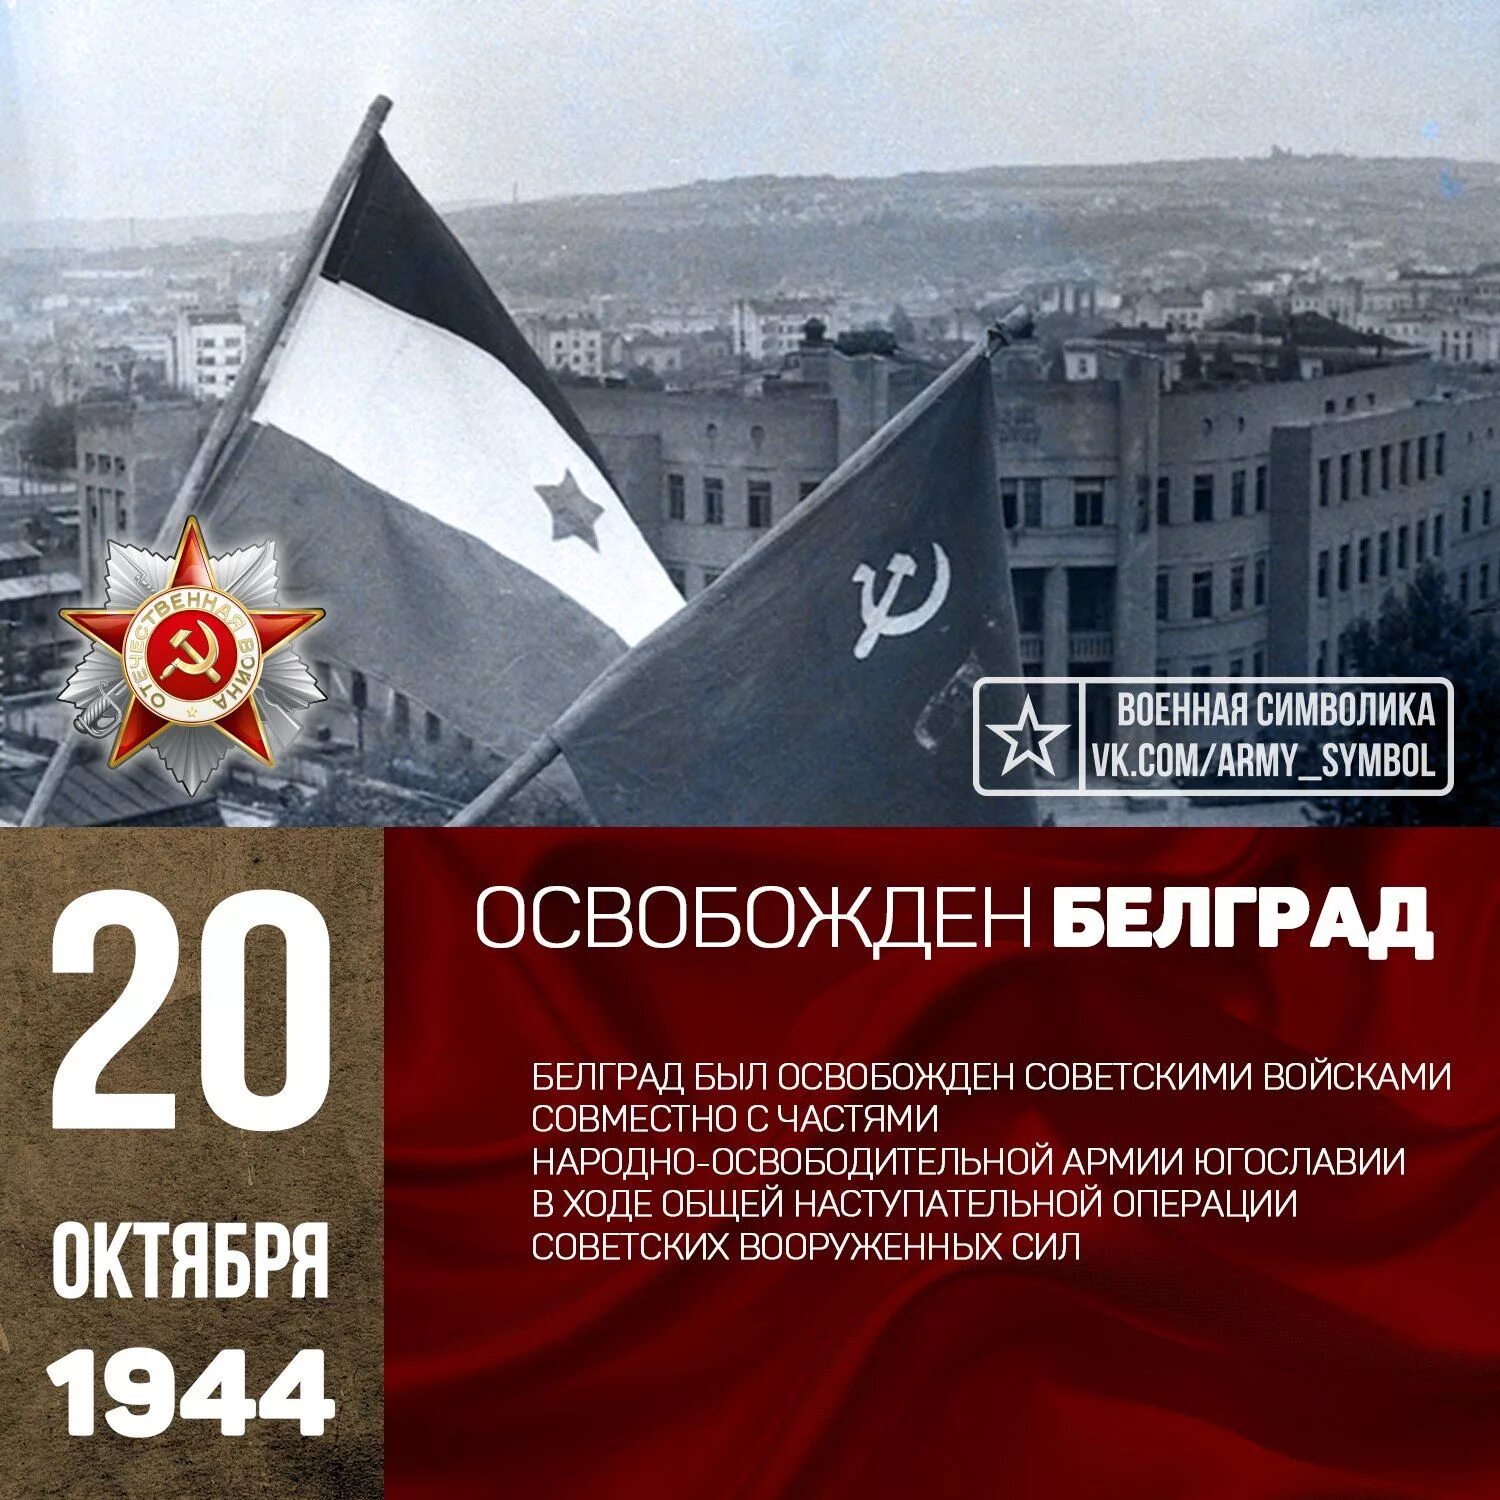 Освобождение Югославии 1944 операция. Освобождение Белграда, октябрь 1944 года. 20 Октября день освобождения Белграда. Советские войска освободили Белград.